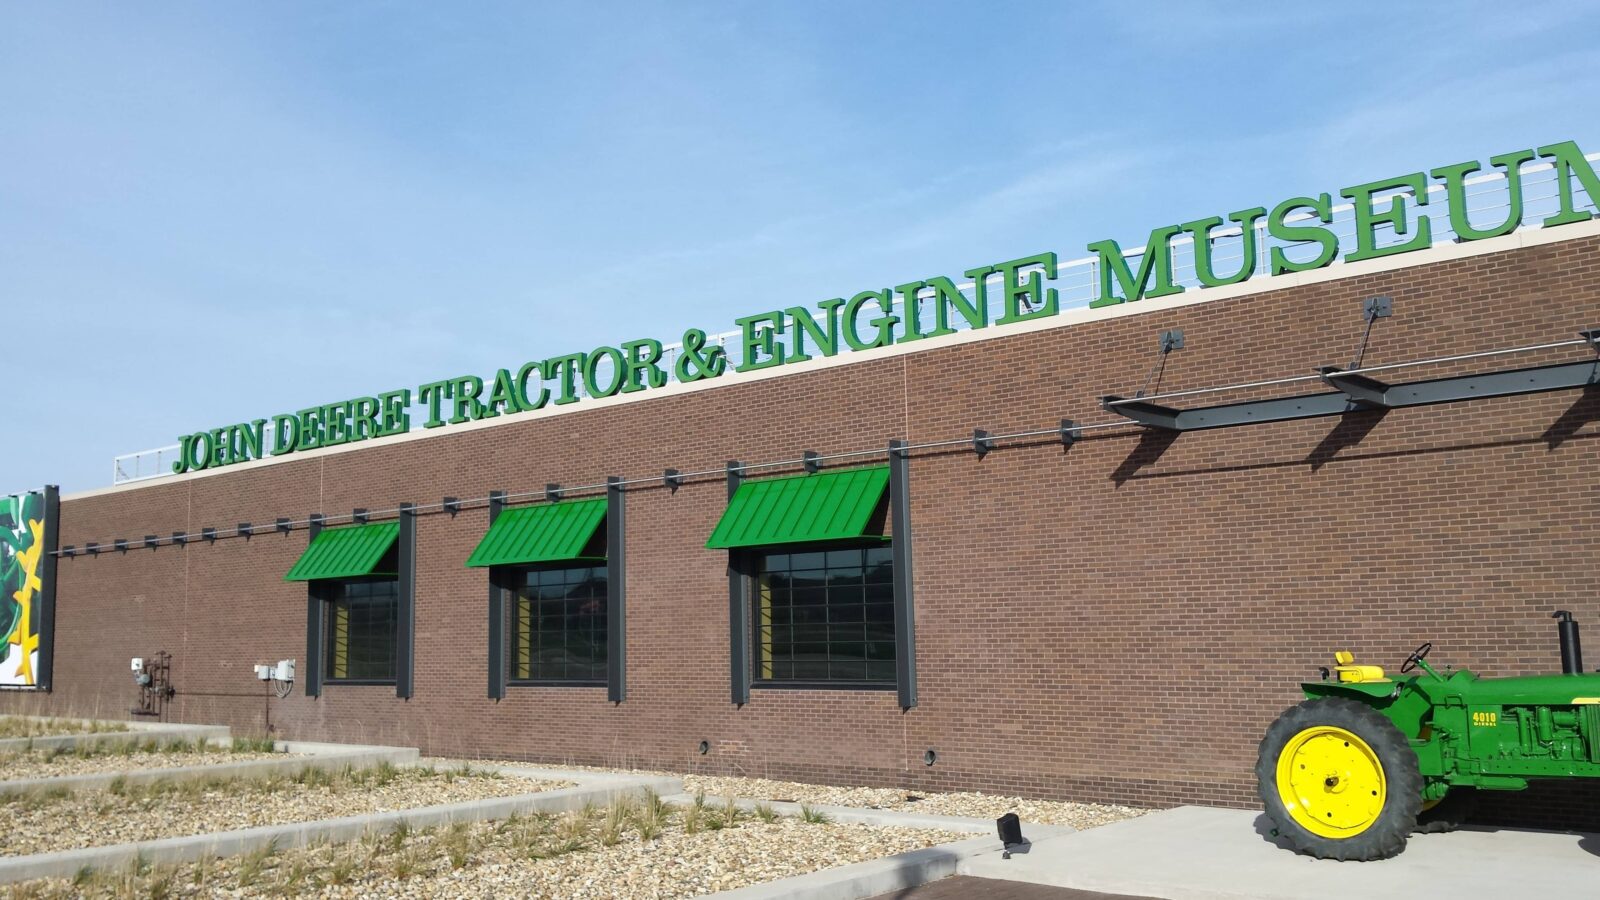 The John Deere Tractor & Engine Museum